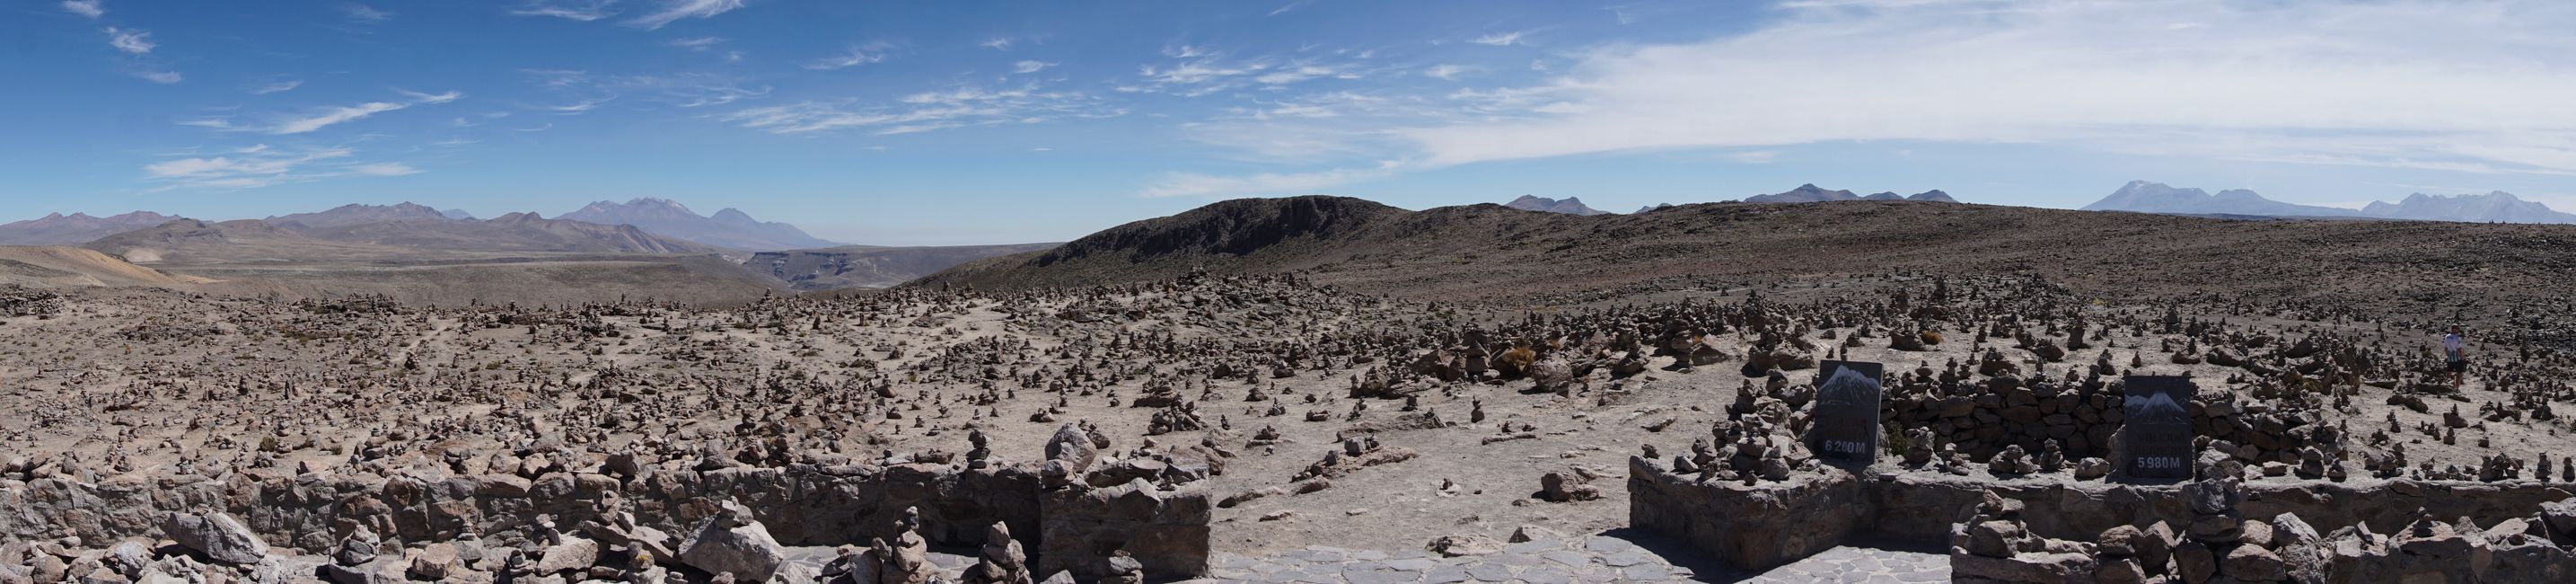 Aussichtspunkt auf die umliegenden Vulkane auf 4900m